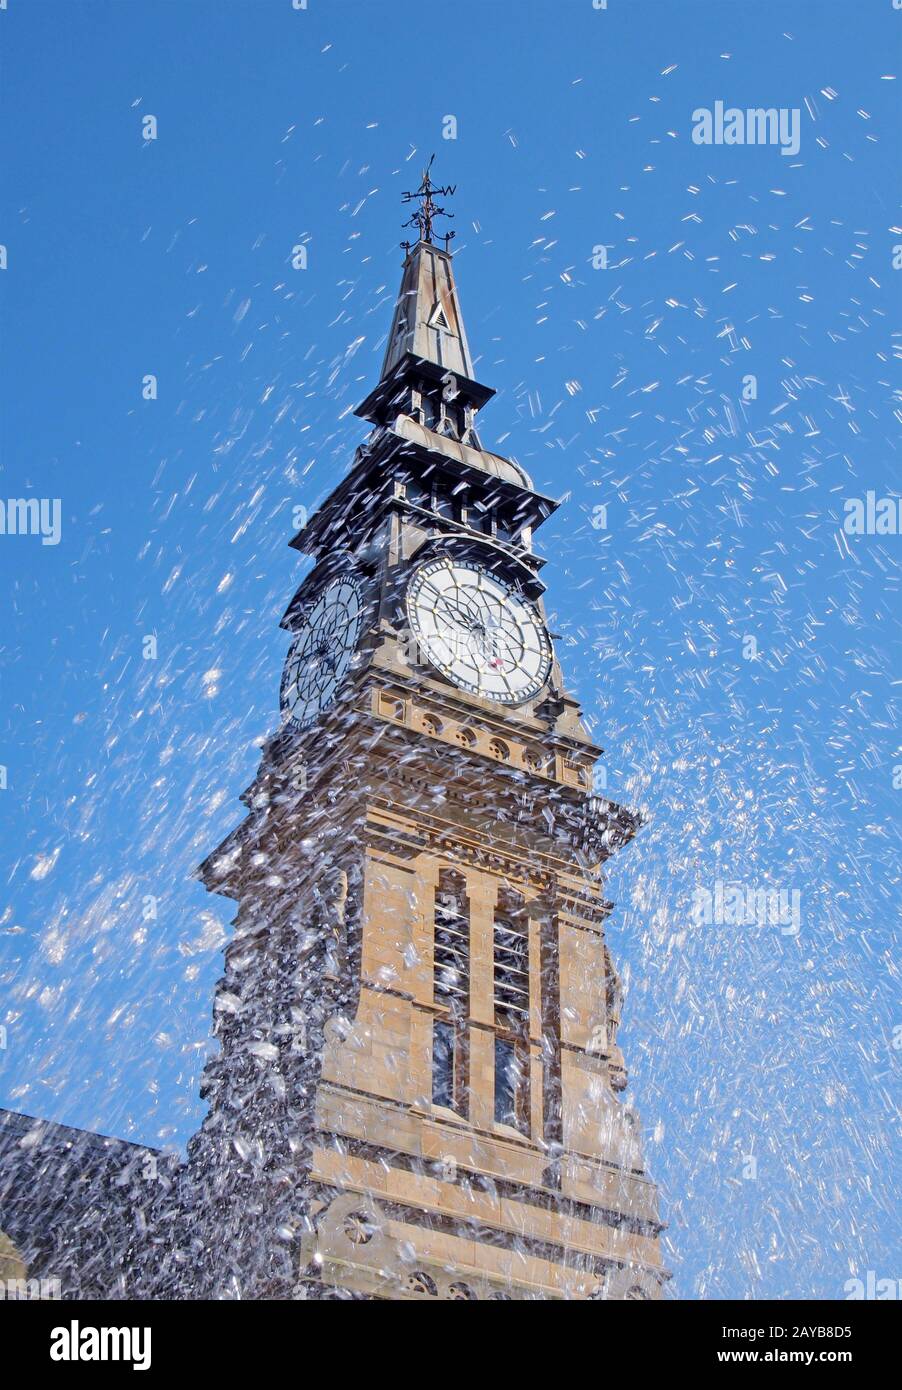 acqua spruzzata sfocata da una fontana di fronte alla torre dell'orologio dello storico edificio atkinson a southport merseyside Foto Stock